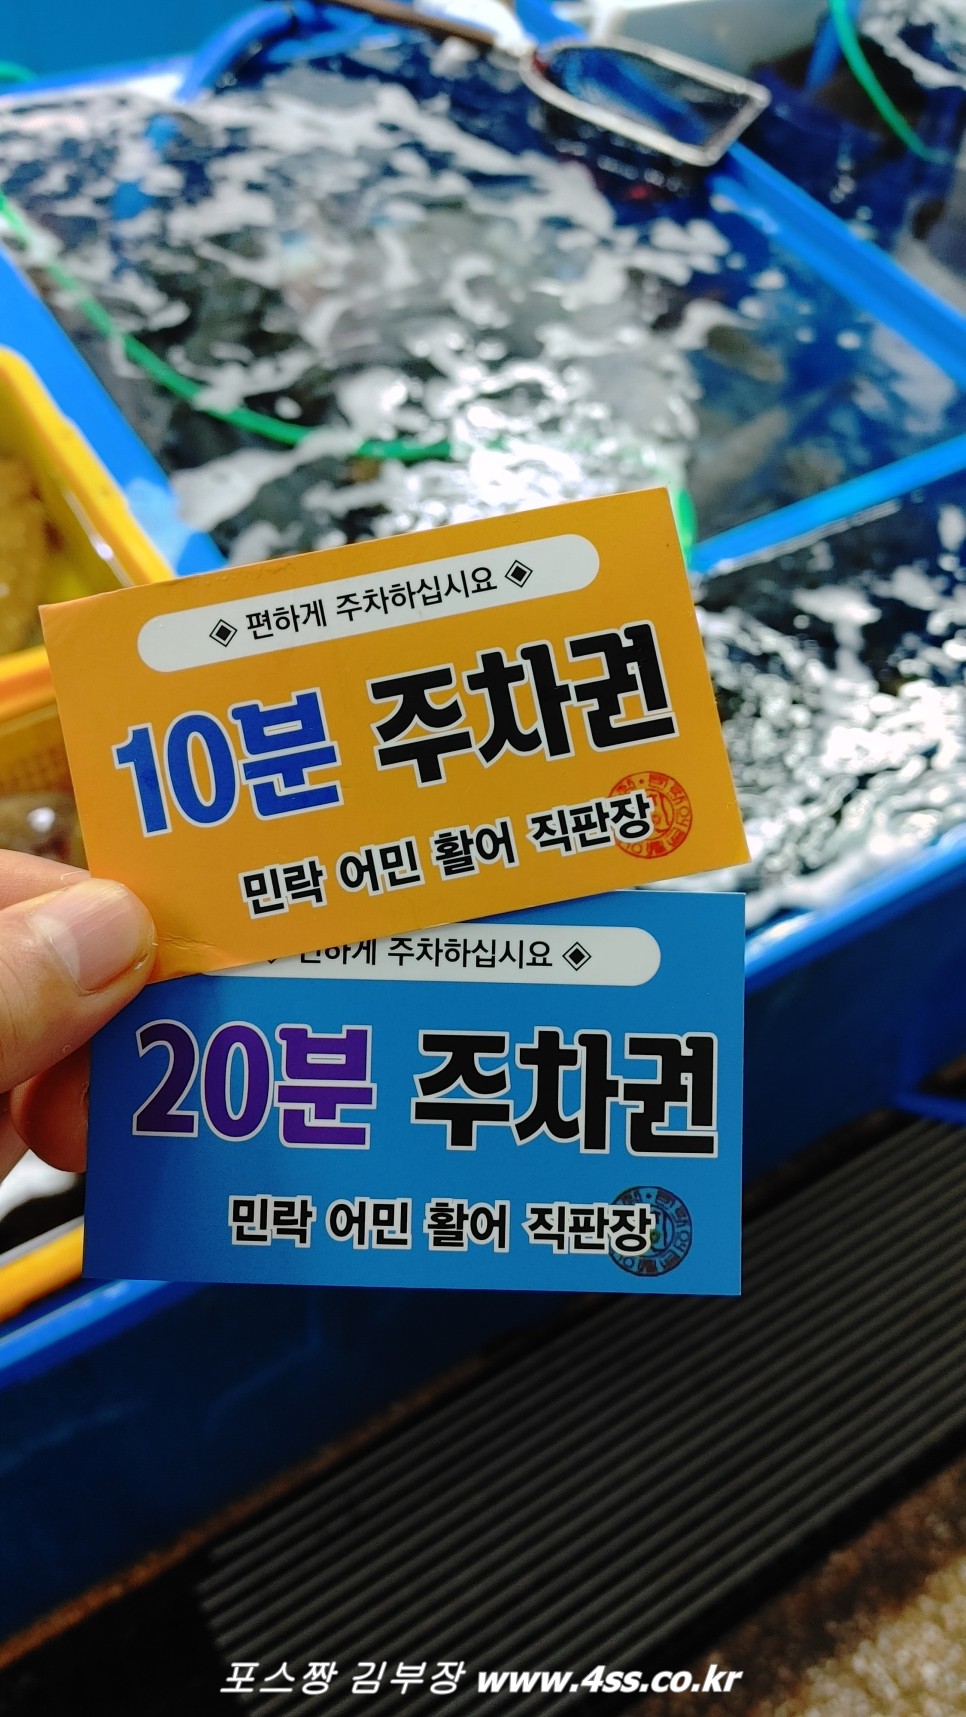 민락어민활어직판장 찐단골 조은상회 광안리회썰어주는곳 추천